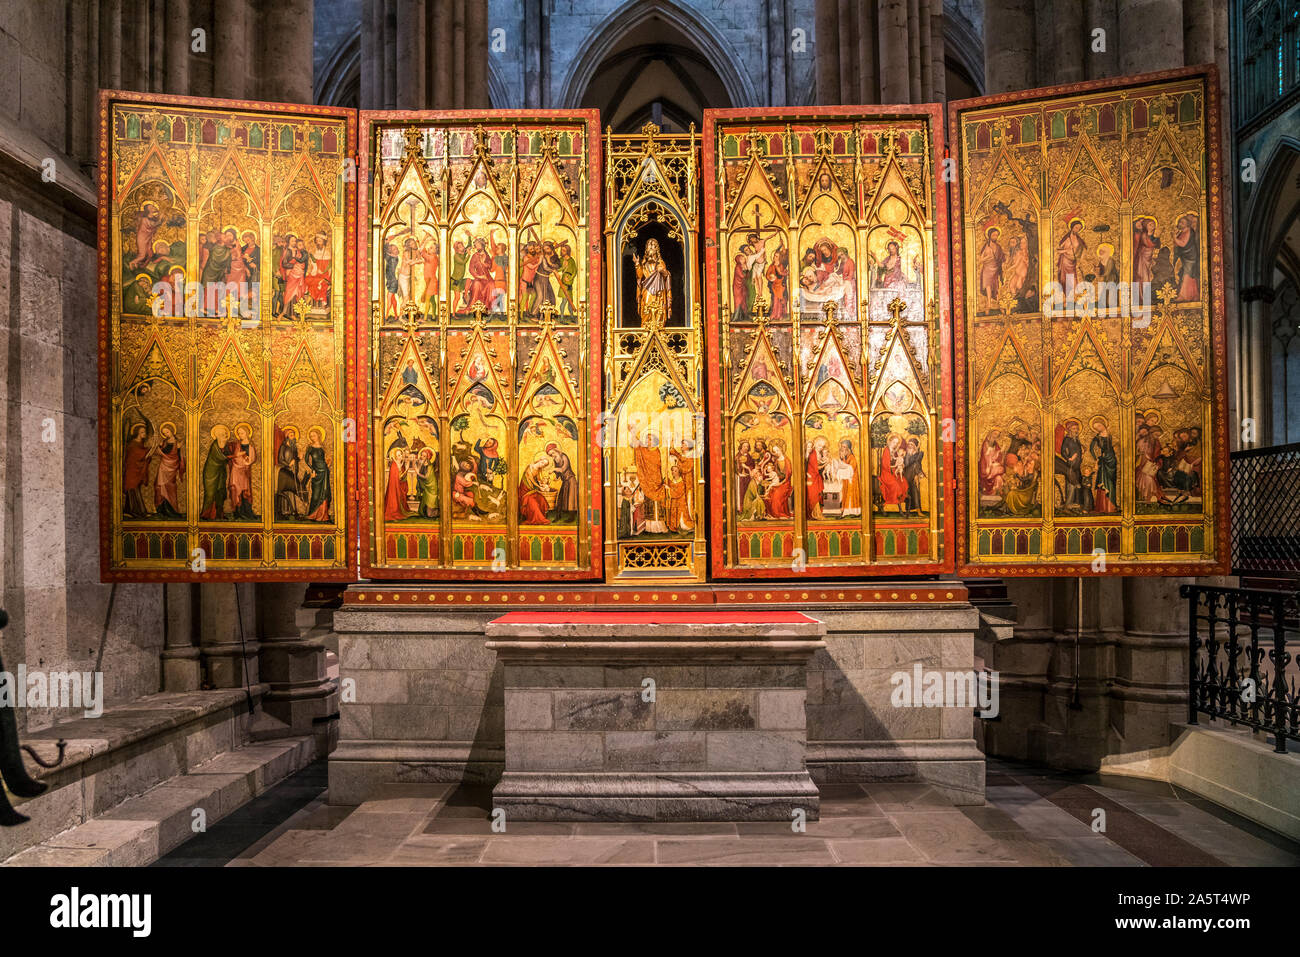 Klaren-Altar, Feiertagsöffnung im Innenraum des Kölner Dom, Köln, Nordrhein-Westfalen, Deutschland    |  Altar of the Poor Clares, Feast Day Opening, Stock Photo